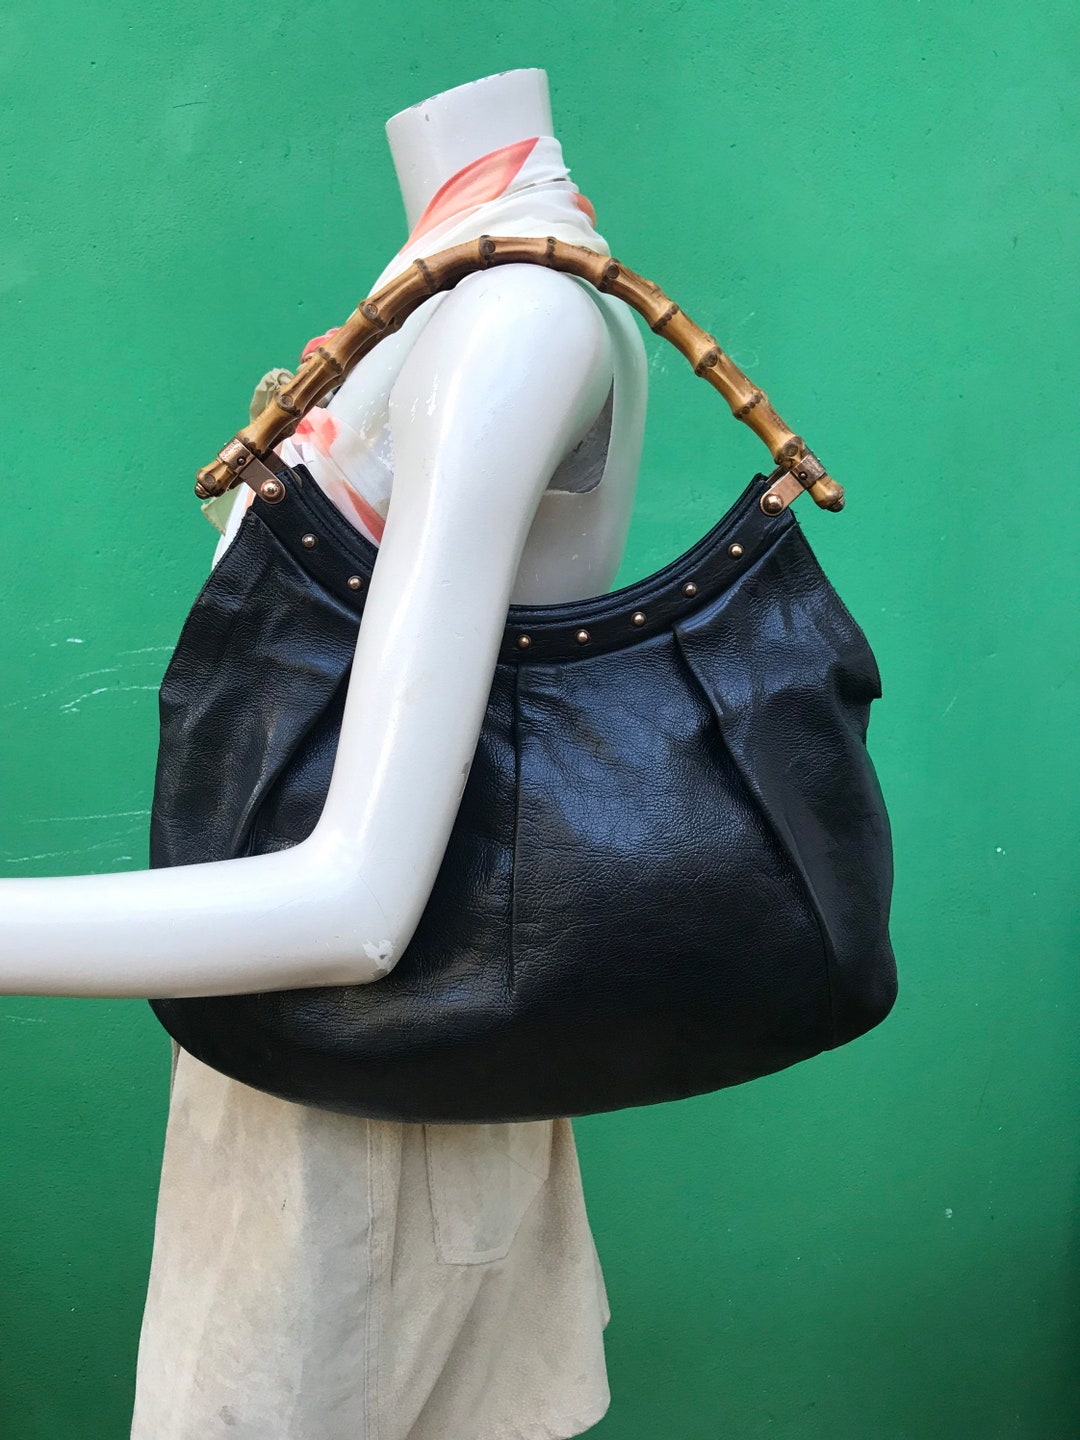 Gucci, Indy leather handbag. - Unique Designer Pieces